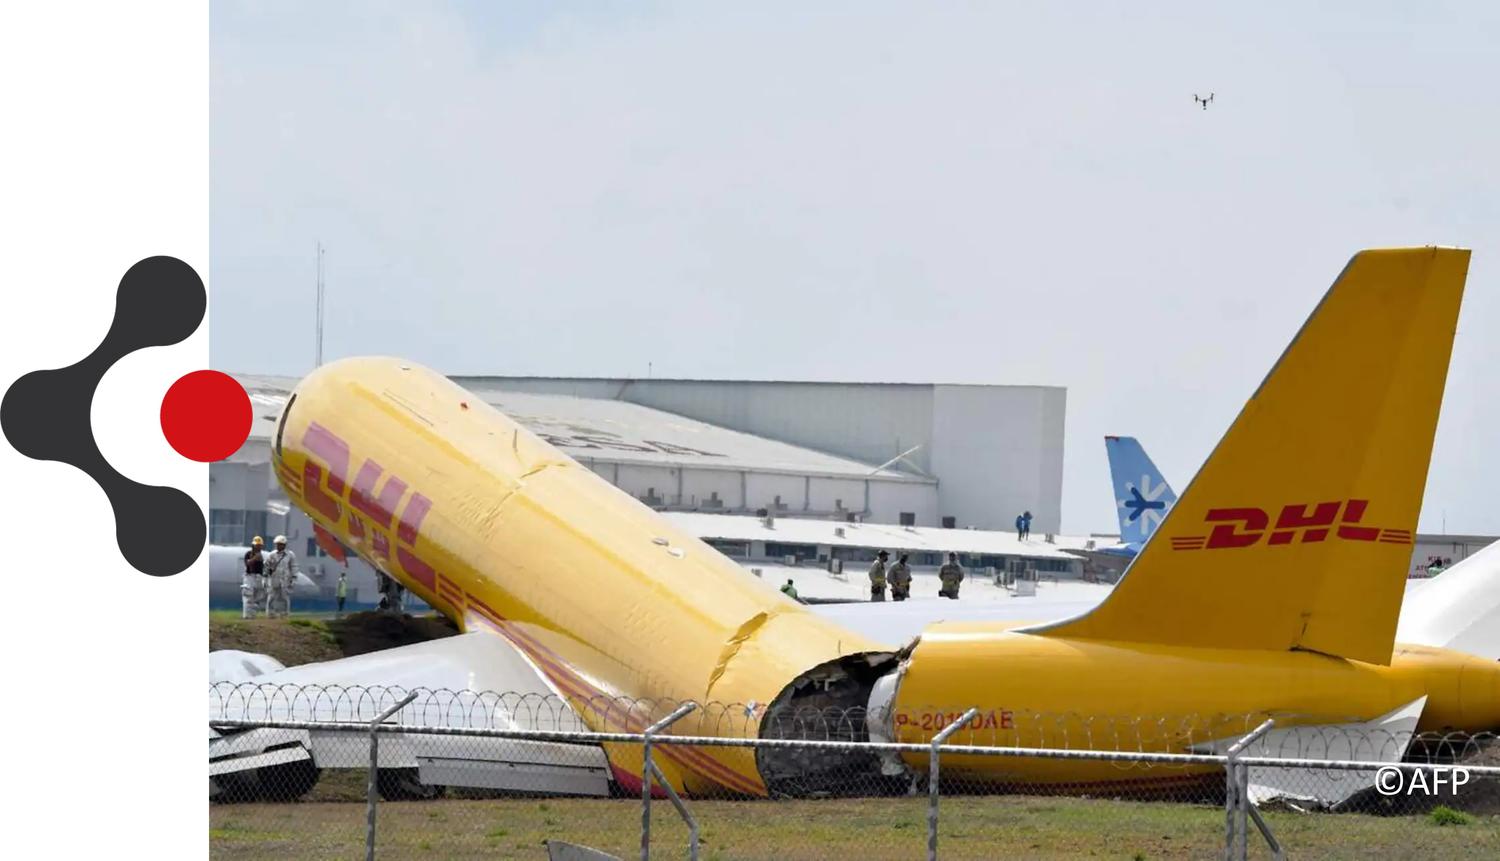 Un avion Cargo DHL se brise en 2 lors de l'atterrissage le 07/04 au Costa Rica